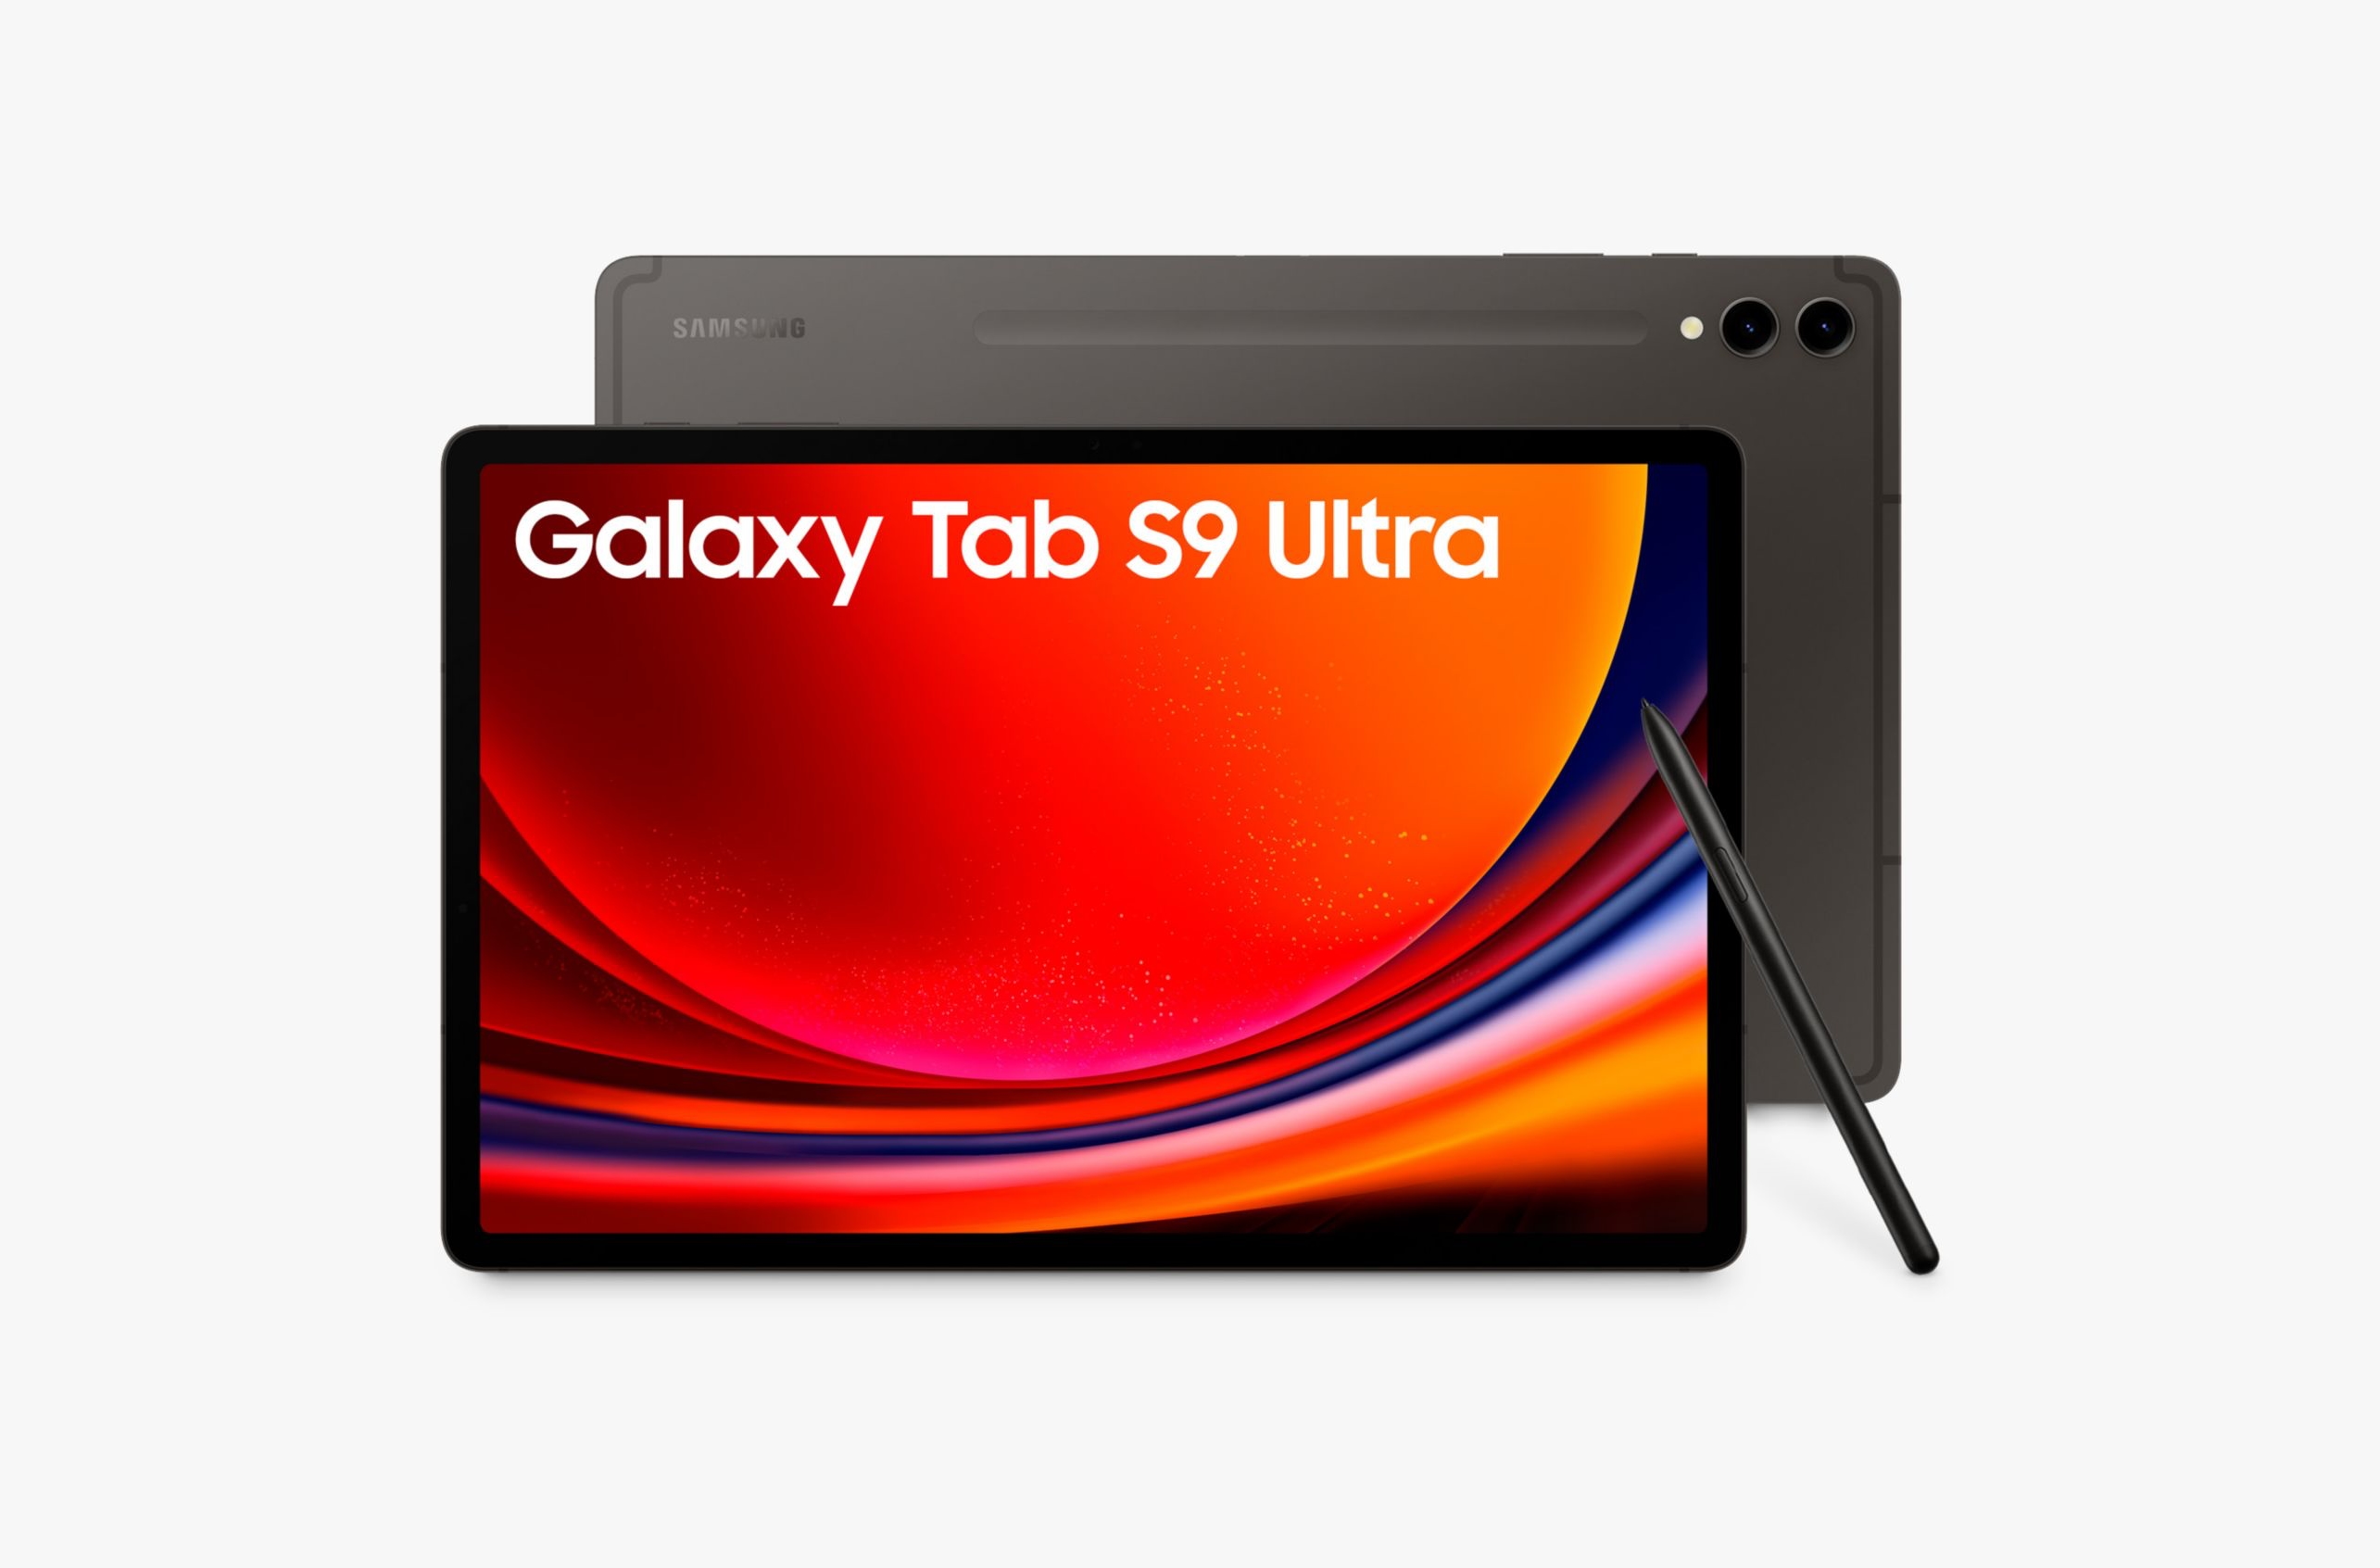 Dagens tilbud: Samsung Galaxy Tab S9 Ultra med 14,6-tommers skjerm og 512 GB lagringsplass kan kjøpes på Amazon med $ 600 rabatt